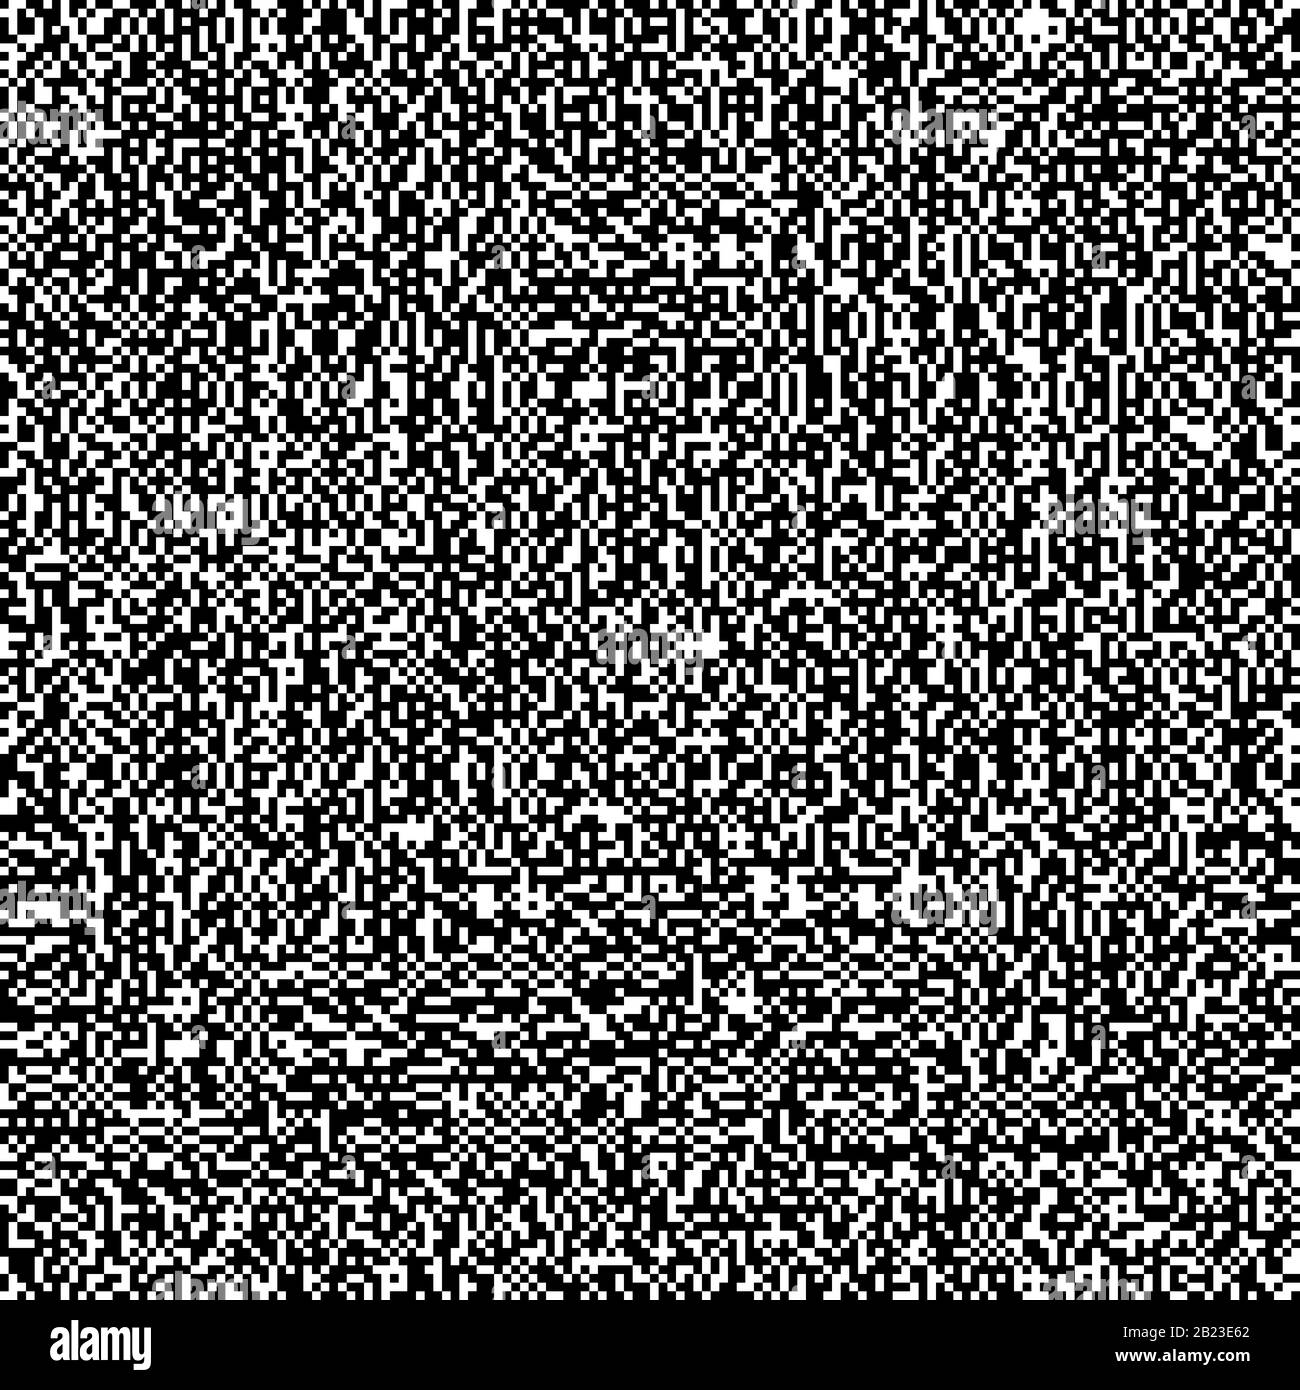 Hintergrund aus zufällig verteilten schwarzen und weißen Quadraten. Nahtlose Kachel und Hintergrund mit dem Design einer zufälligen, computergenerierten Textur und Stockfoto